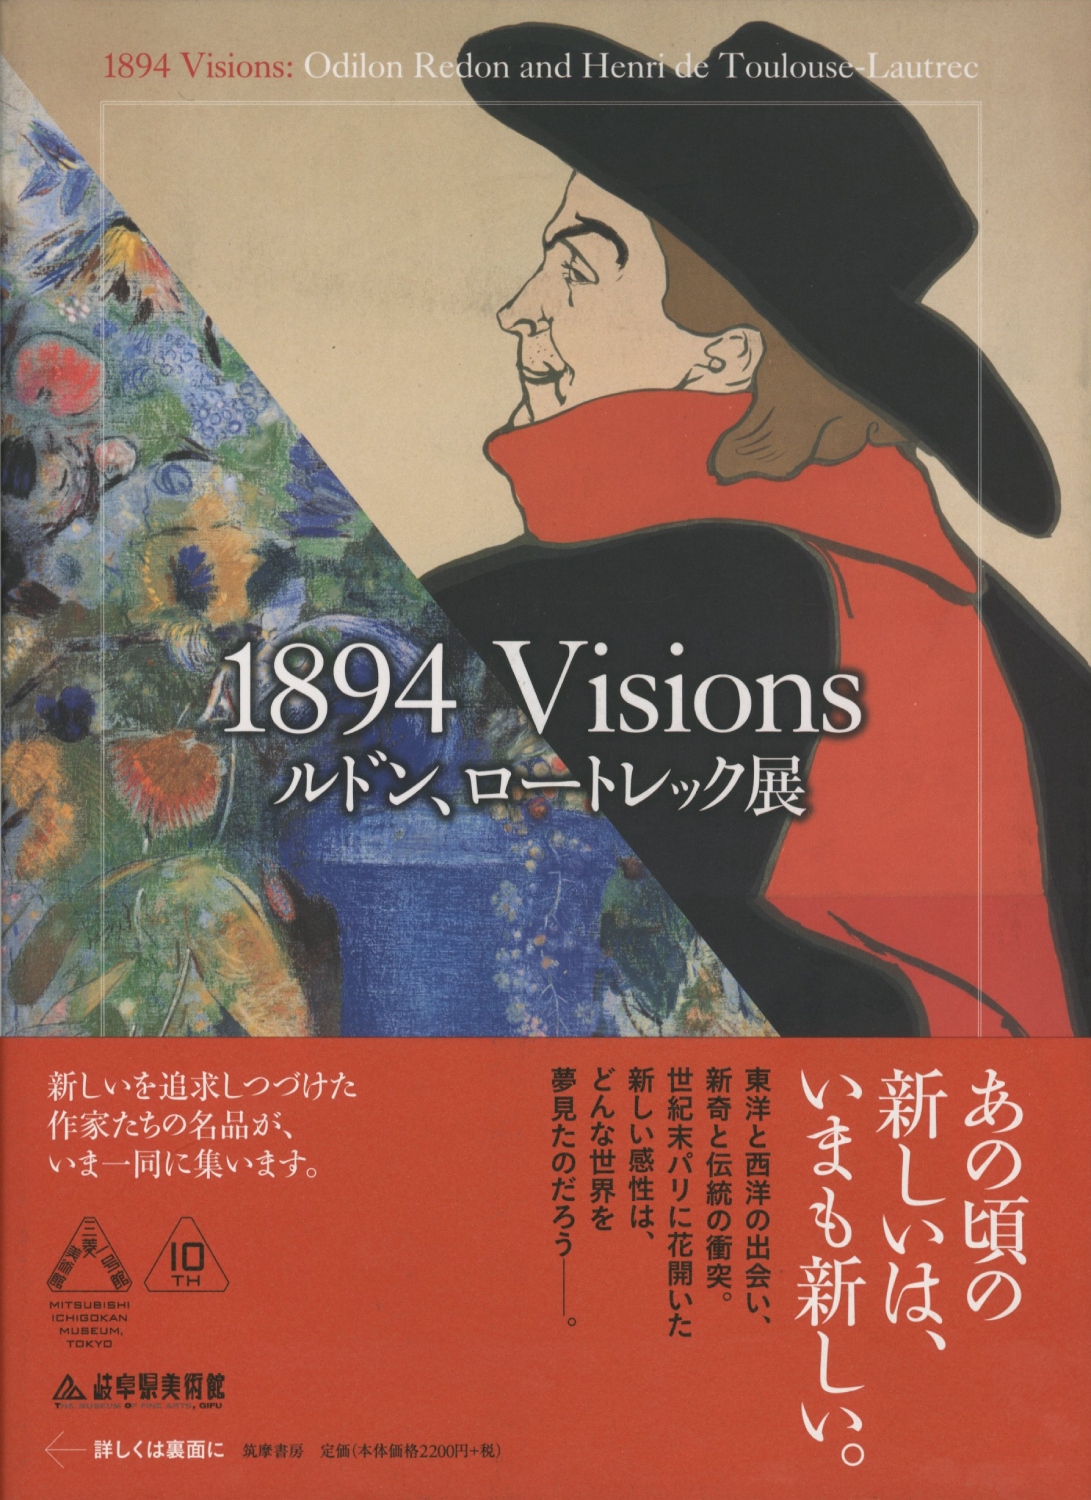 1894 Visions ルドン、ロートレック展［image1］